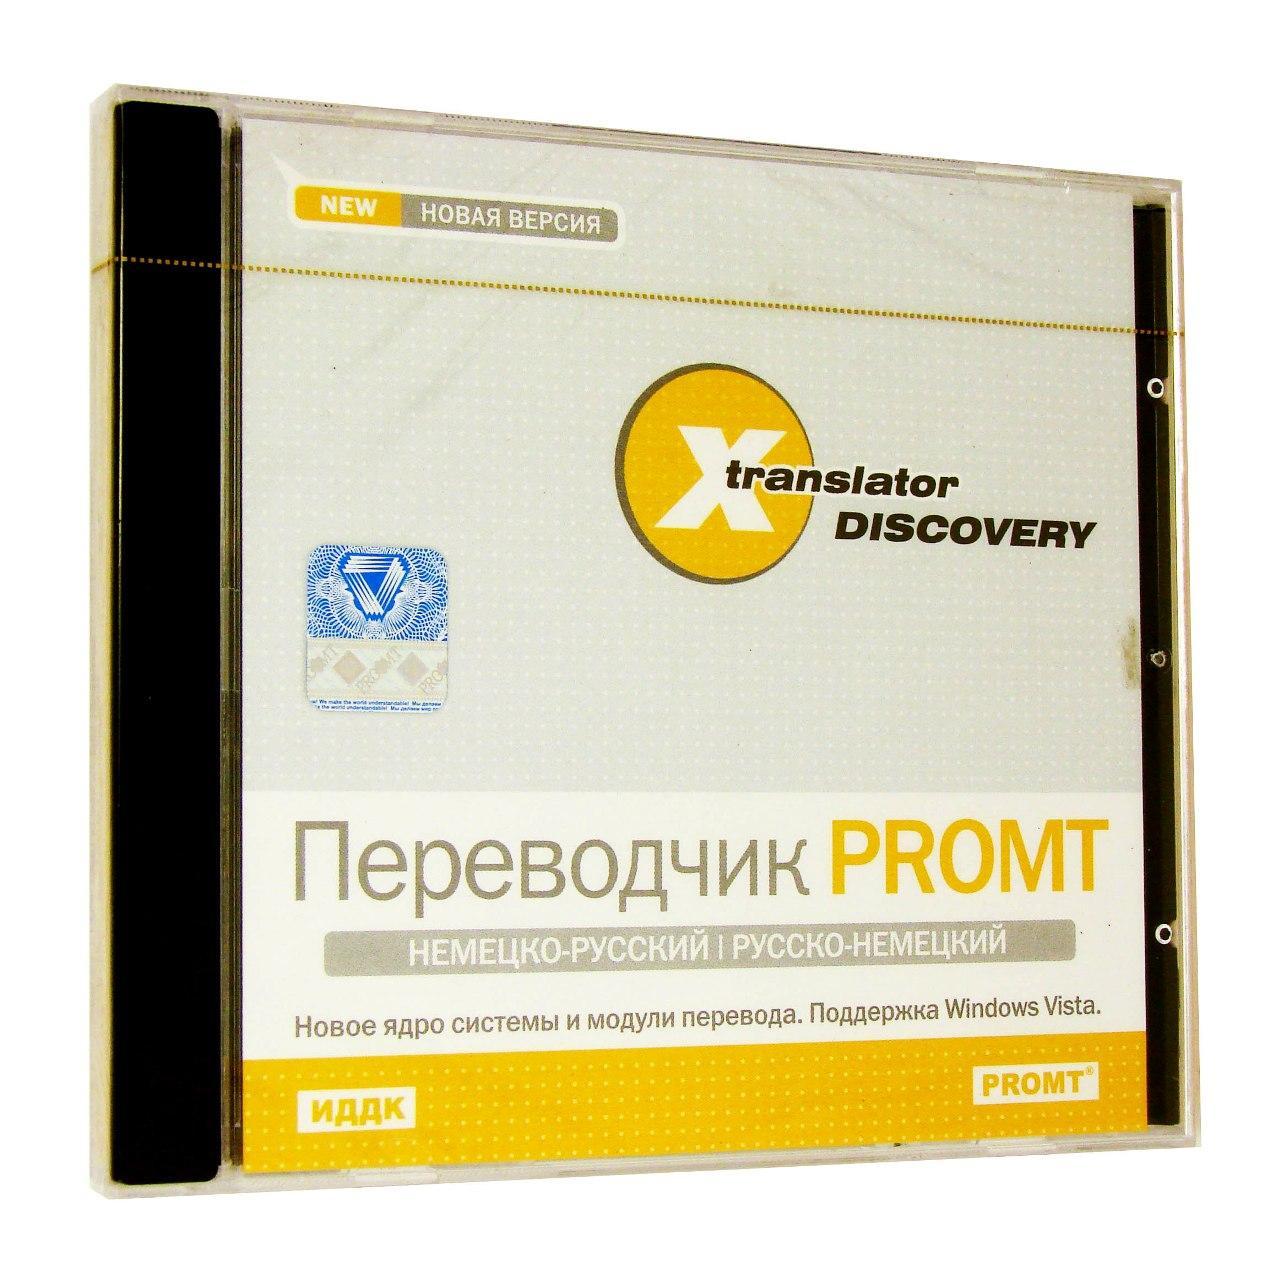 Компьютерный компакт-диск X-Translator Discovery. Переводчик Promt: Немецко-русский, русско-немецкий [X-Translator Discovery] (PC), фирма "ИДДК", 1CD